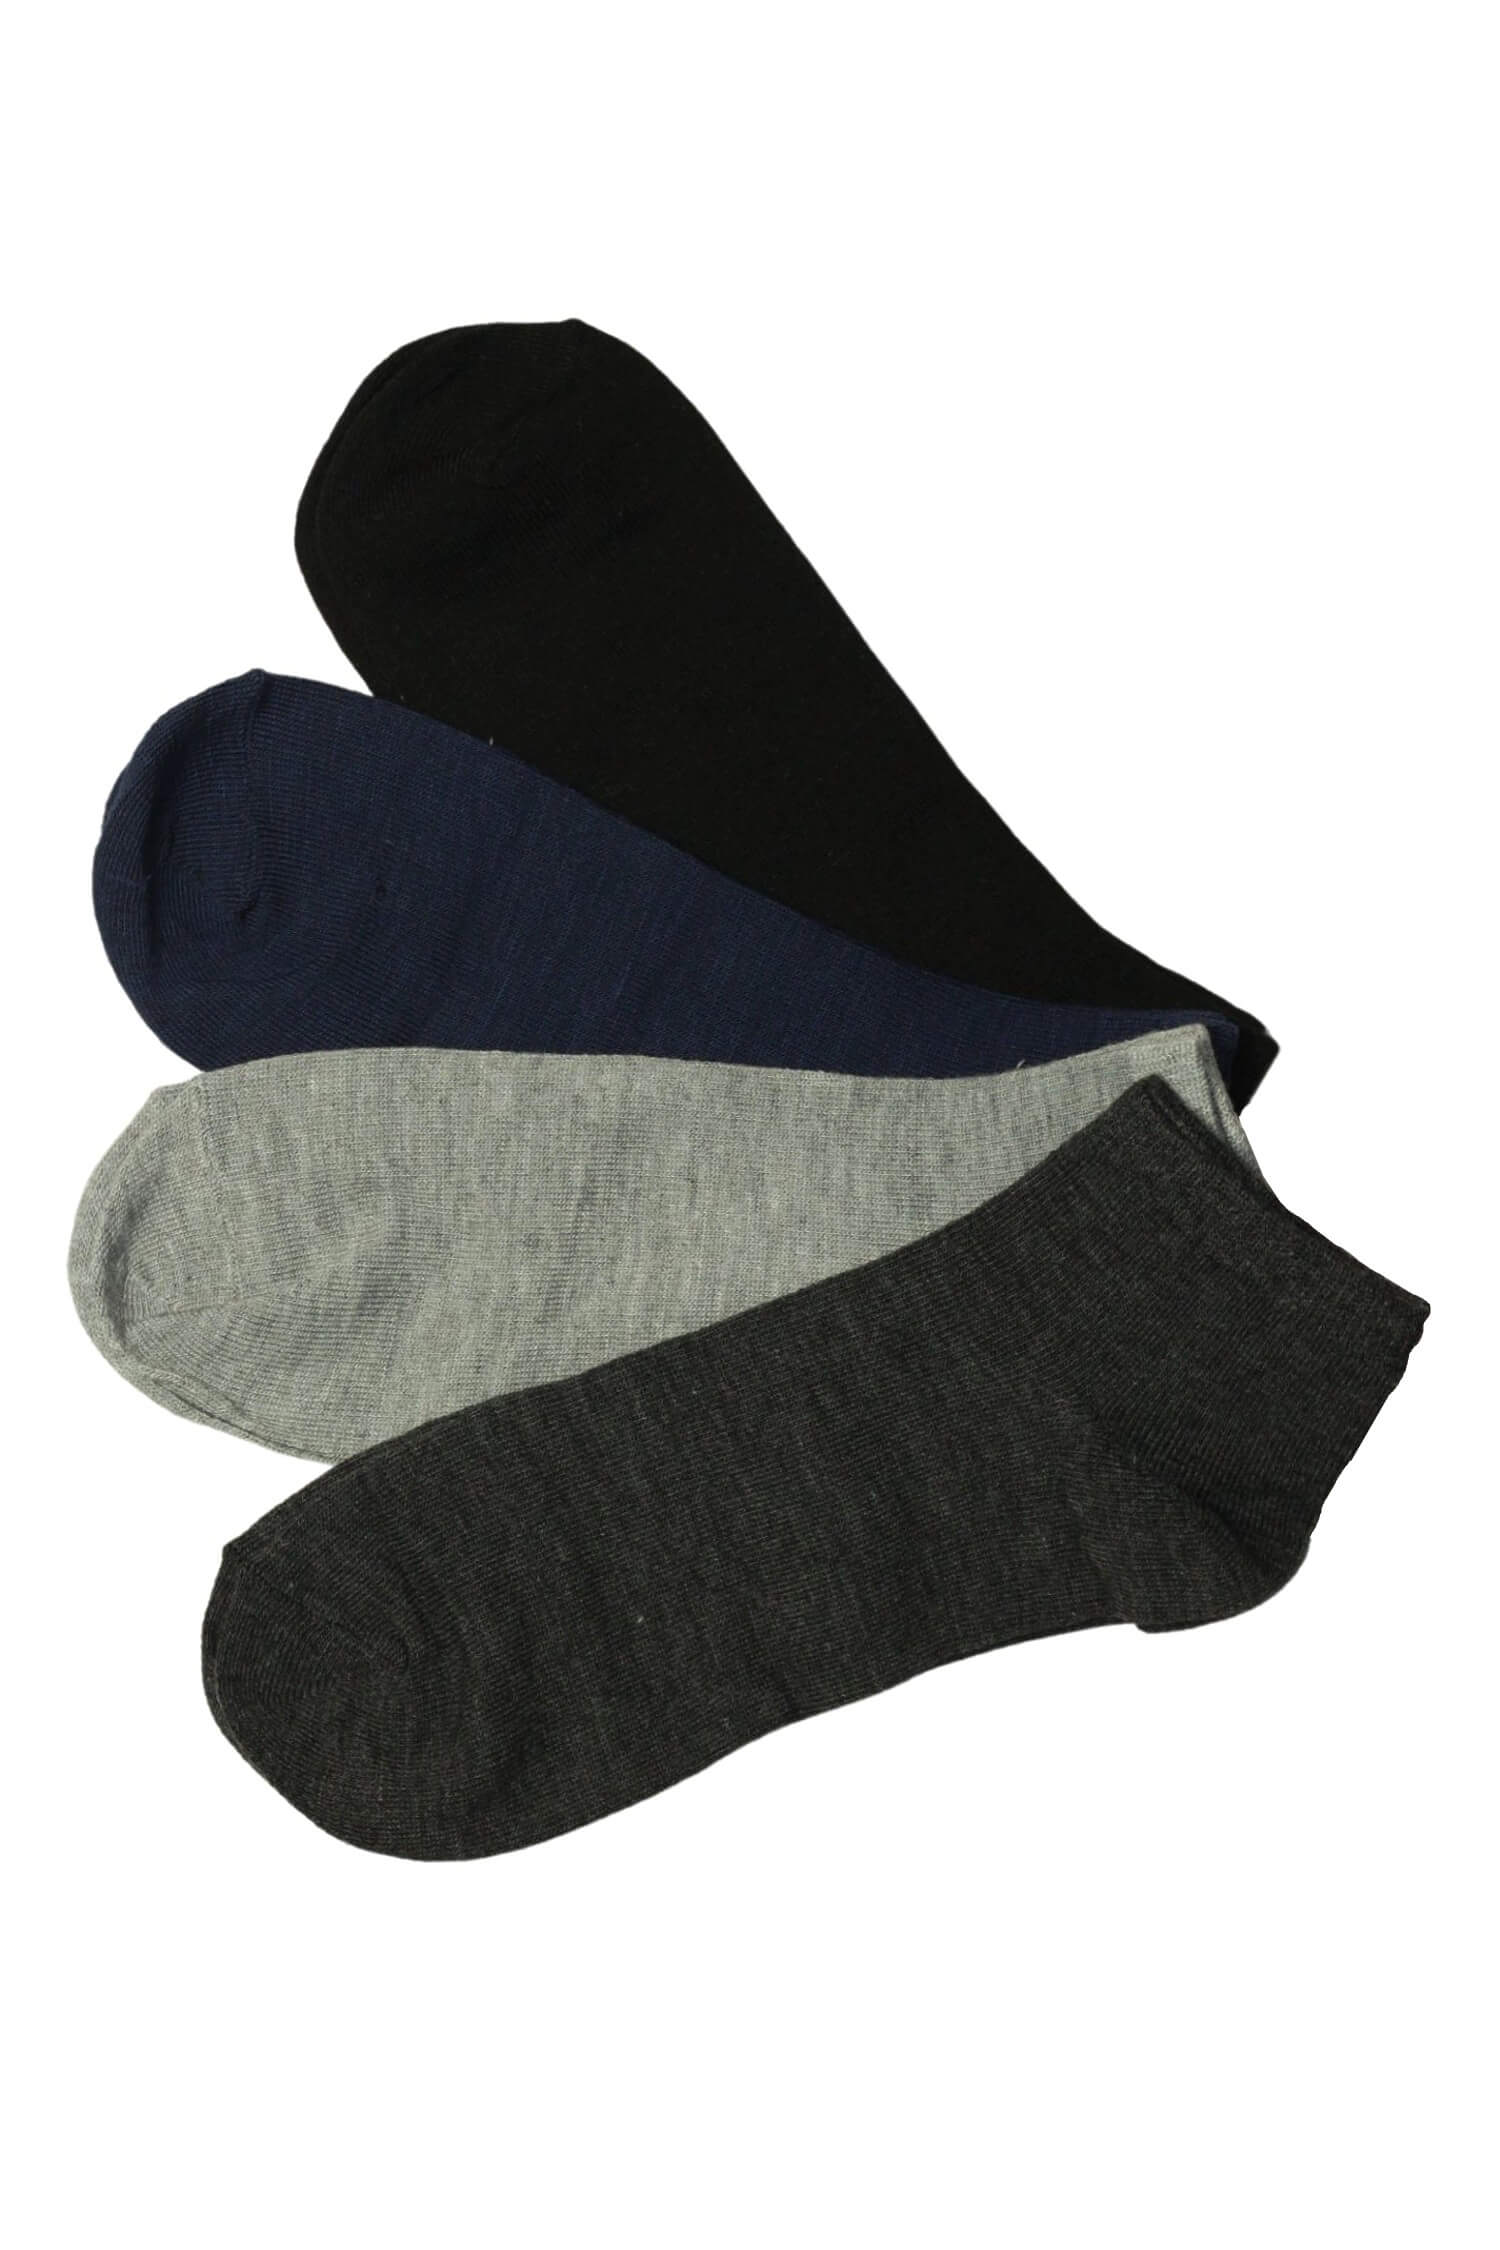 Levné pánské ponožky bavlna GM-404B - 3 páry 40-44 vícebarevná